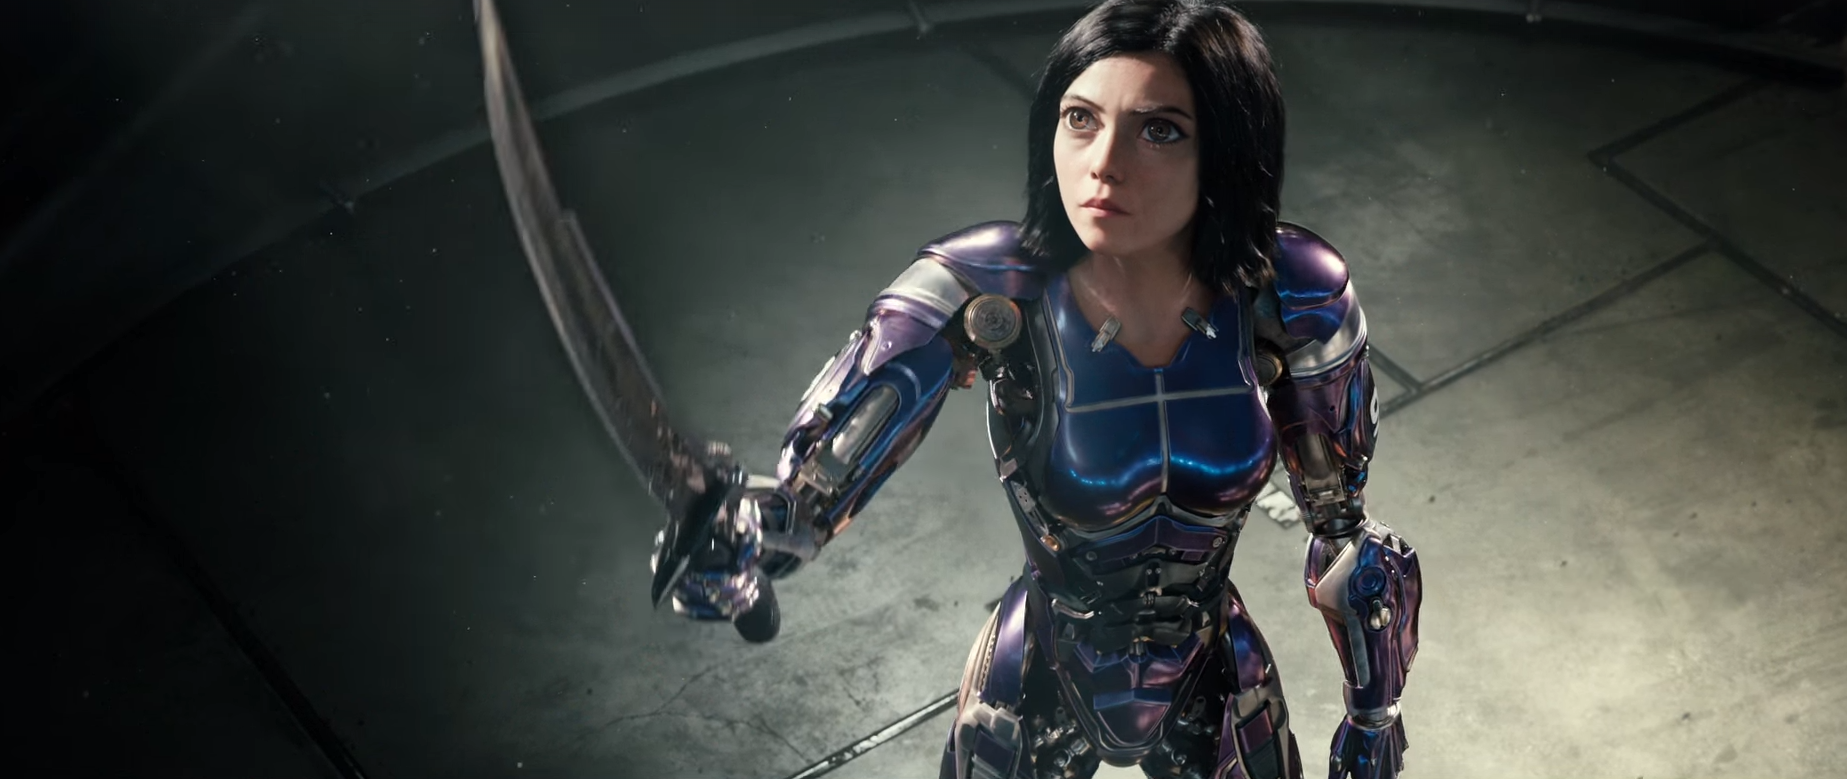 Alita hóa nữ chiến binh siêu ngầu trong Trailer mới ra mắt